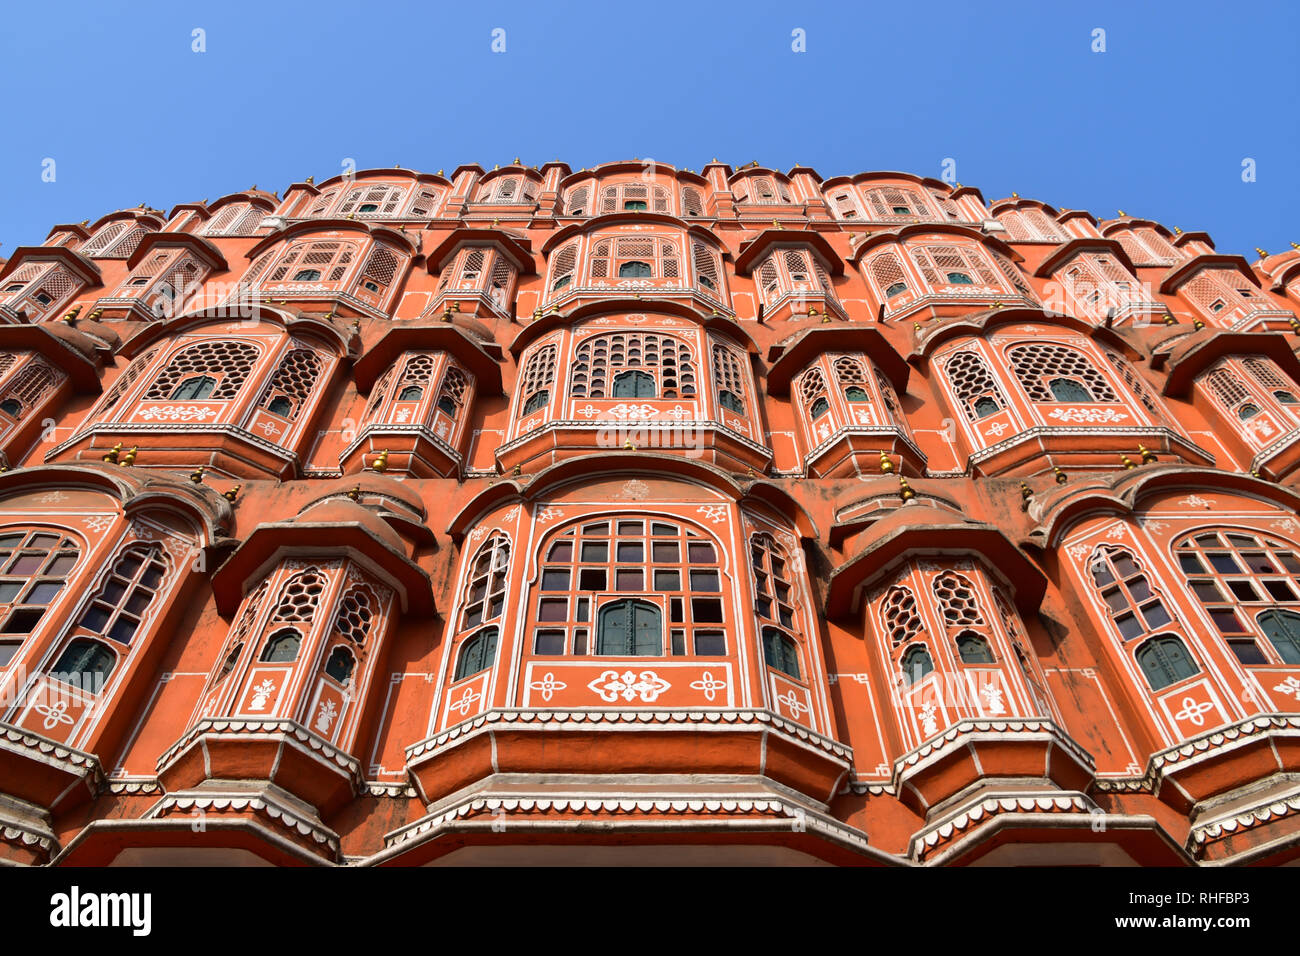 Hawa Mahal, Palace of Winds, Jaipur, Rajasthan, India Stock Photo